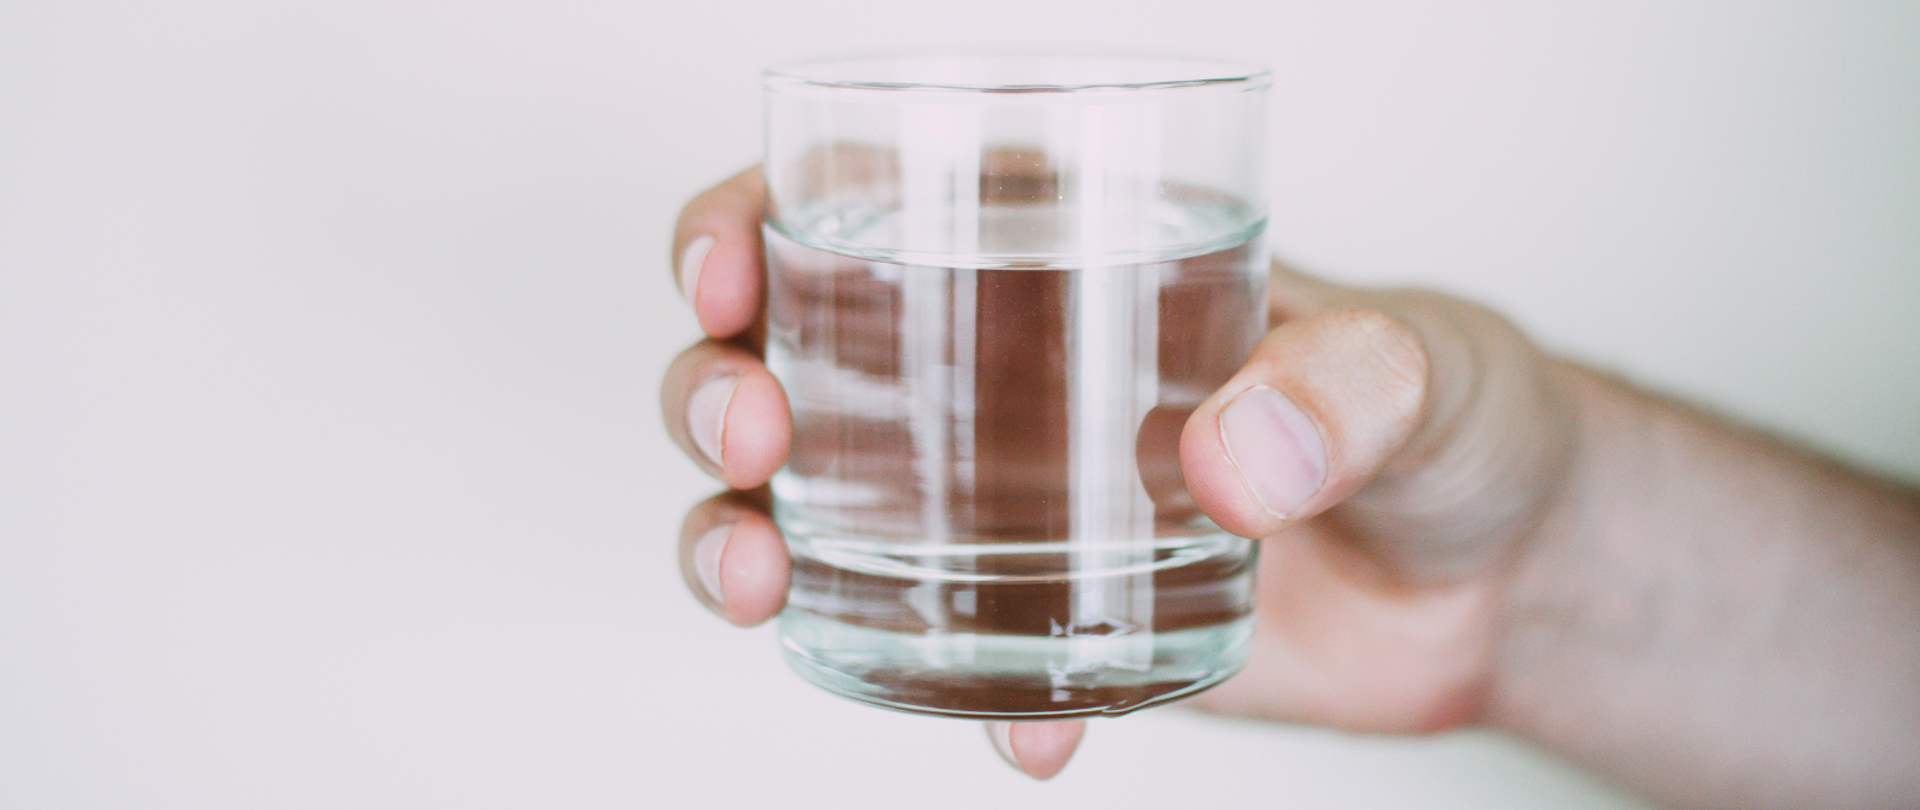 Dłoń trzymająca szklankę z wodą